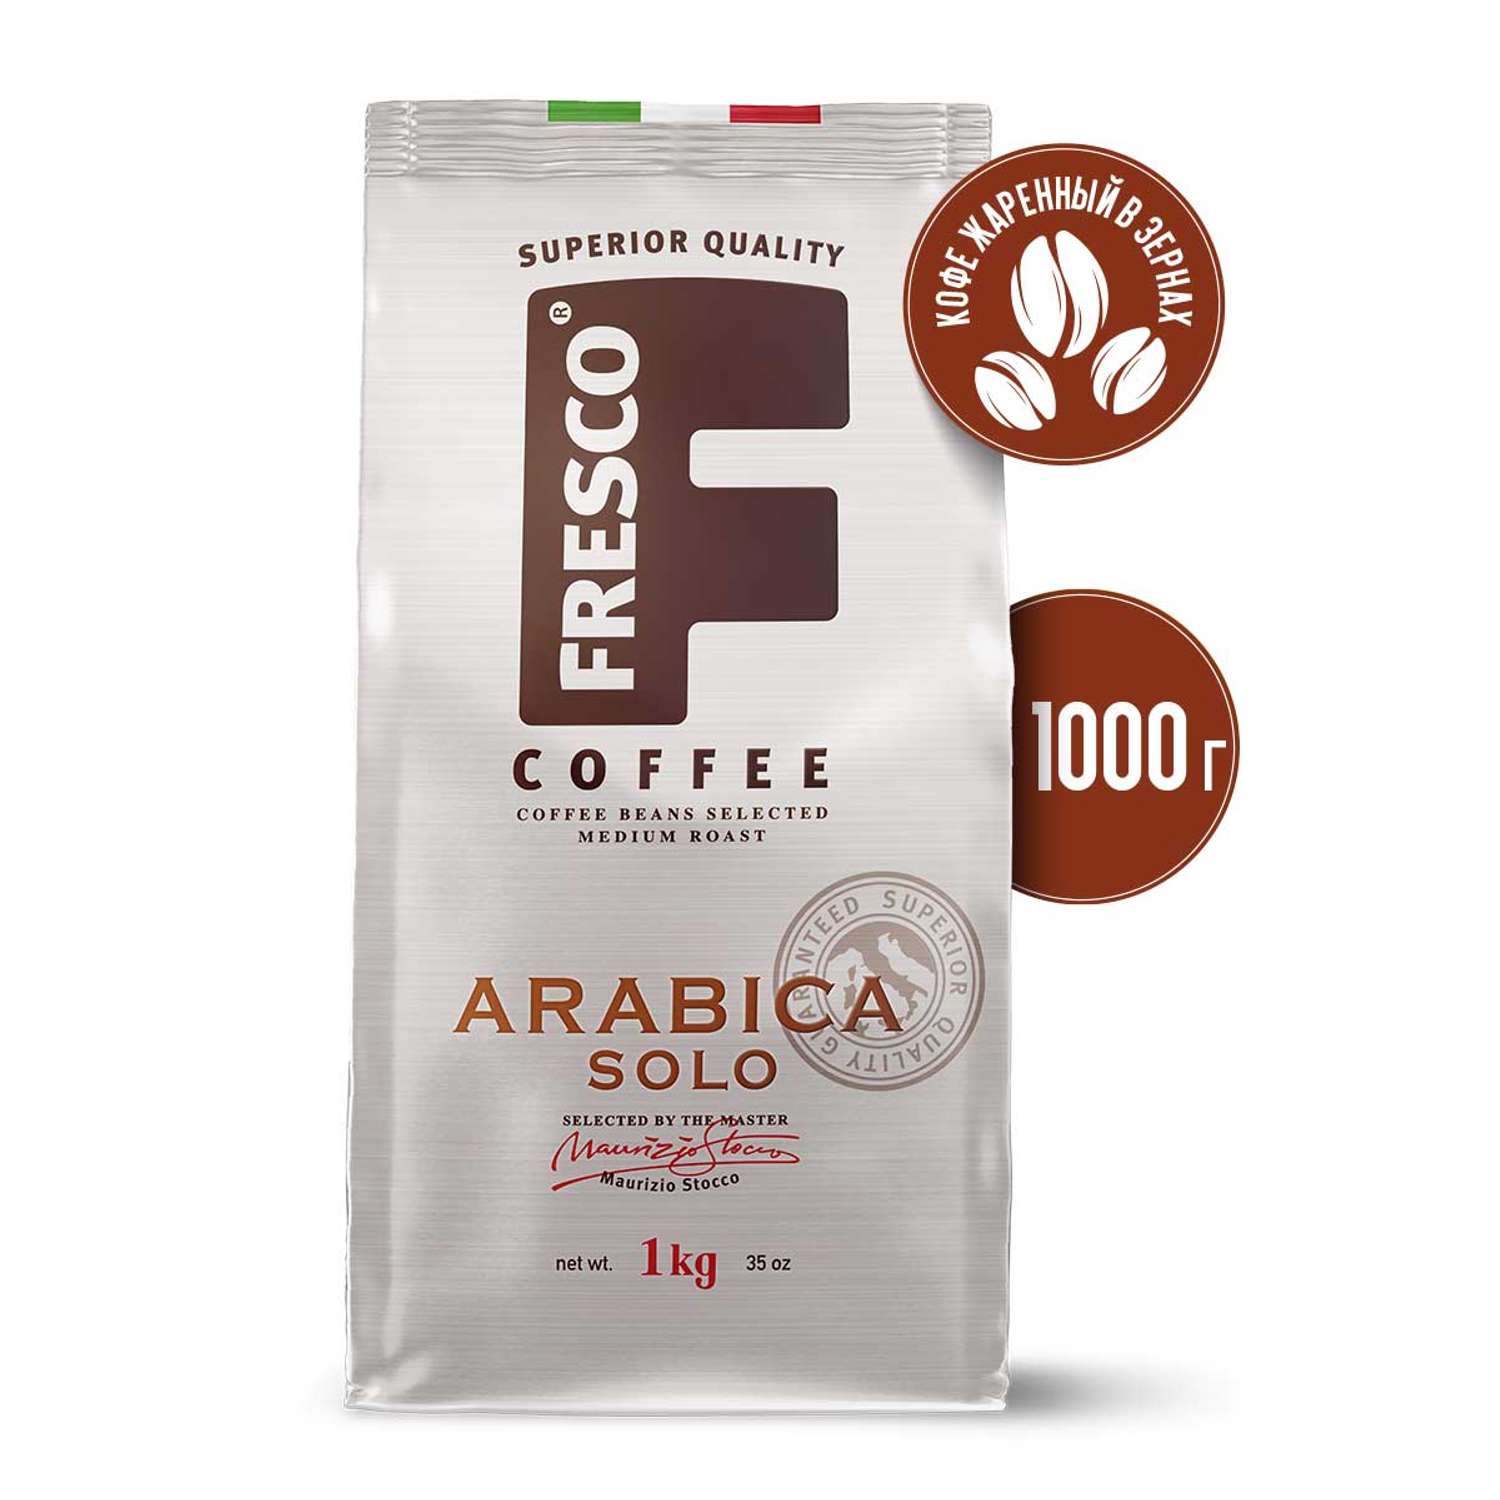 Кофе в зернах fresco arabica